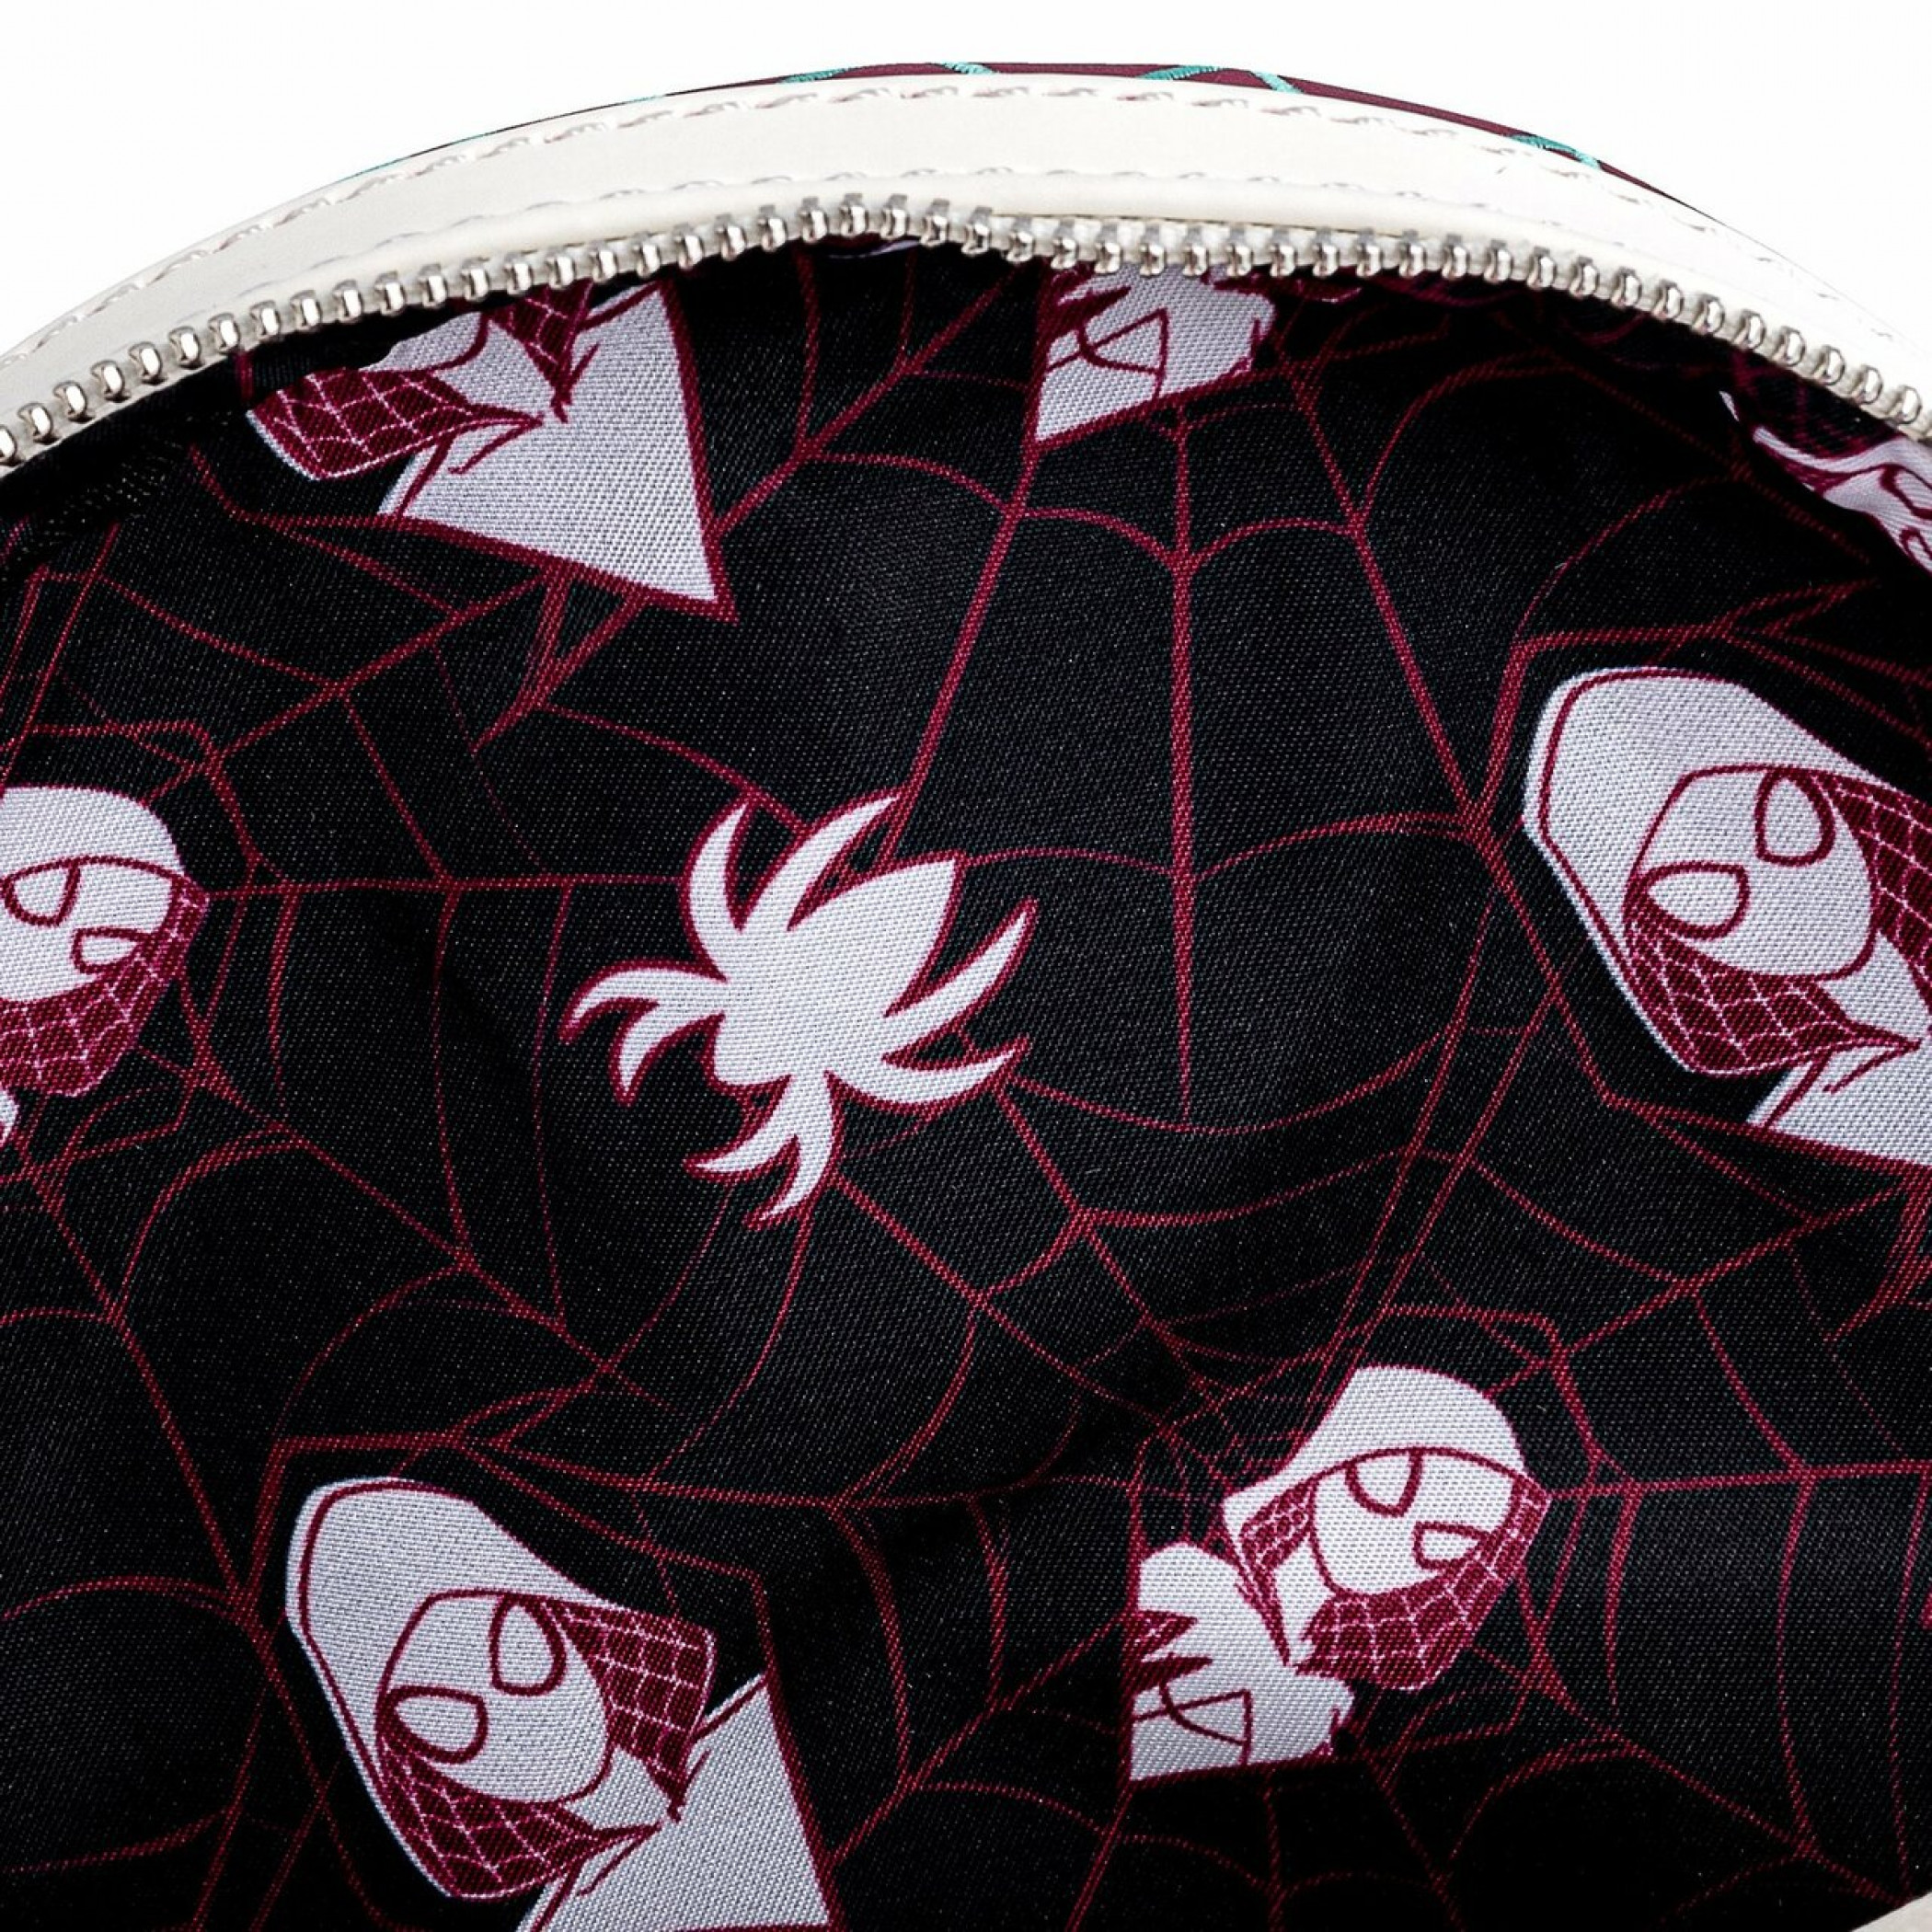 Spider Man Louis Vuitton bedding set